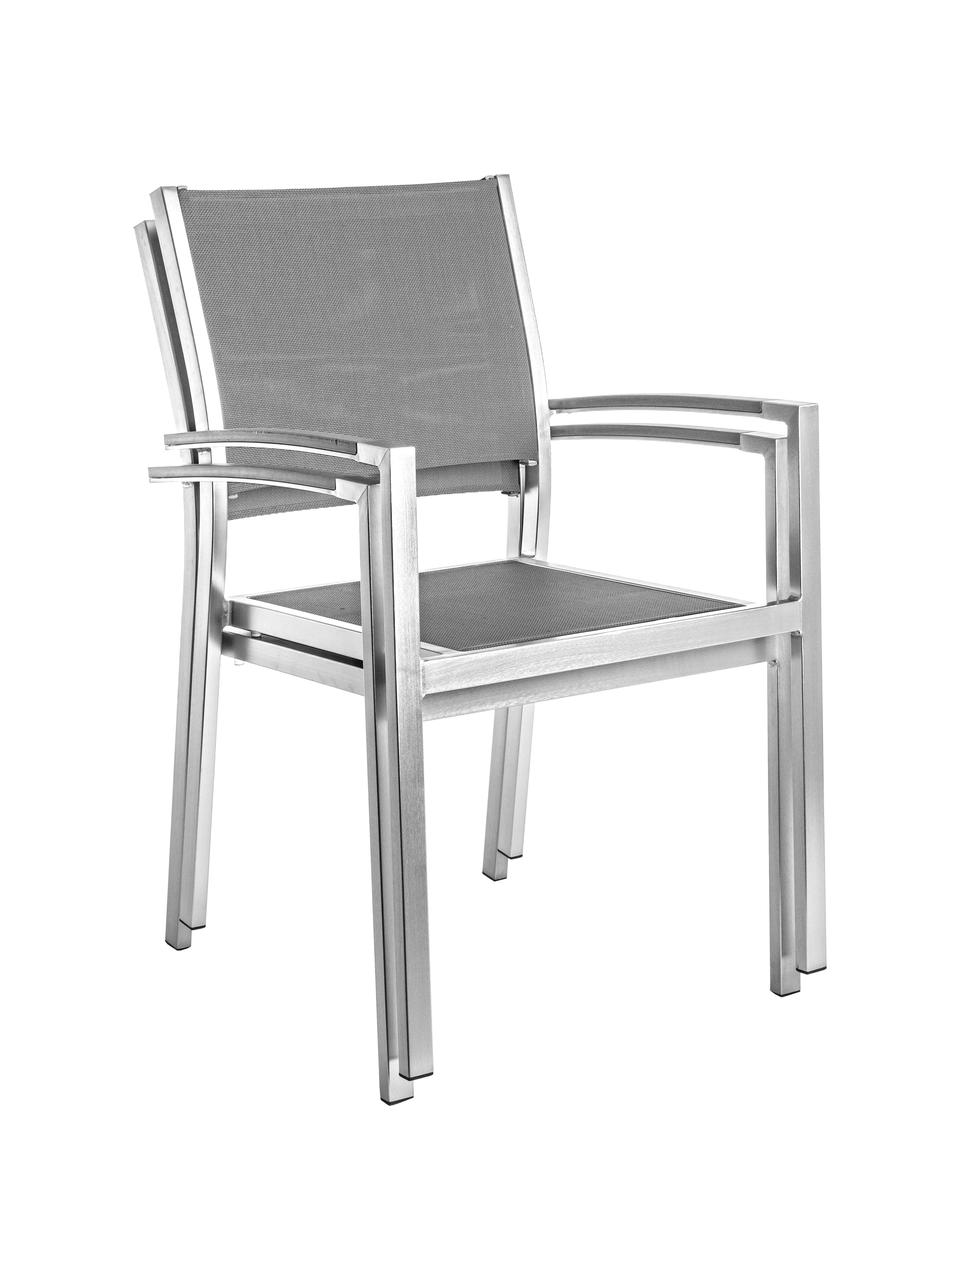 Sedia da giardino pieghevole Irwin, Struttura: alluminio satinato, Seduta: textilene, Acciaio, grigio, Larg. 54 x Prof. 57 cm